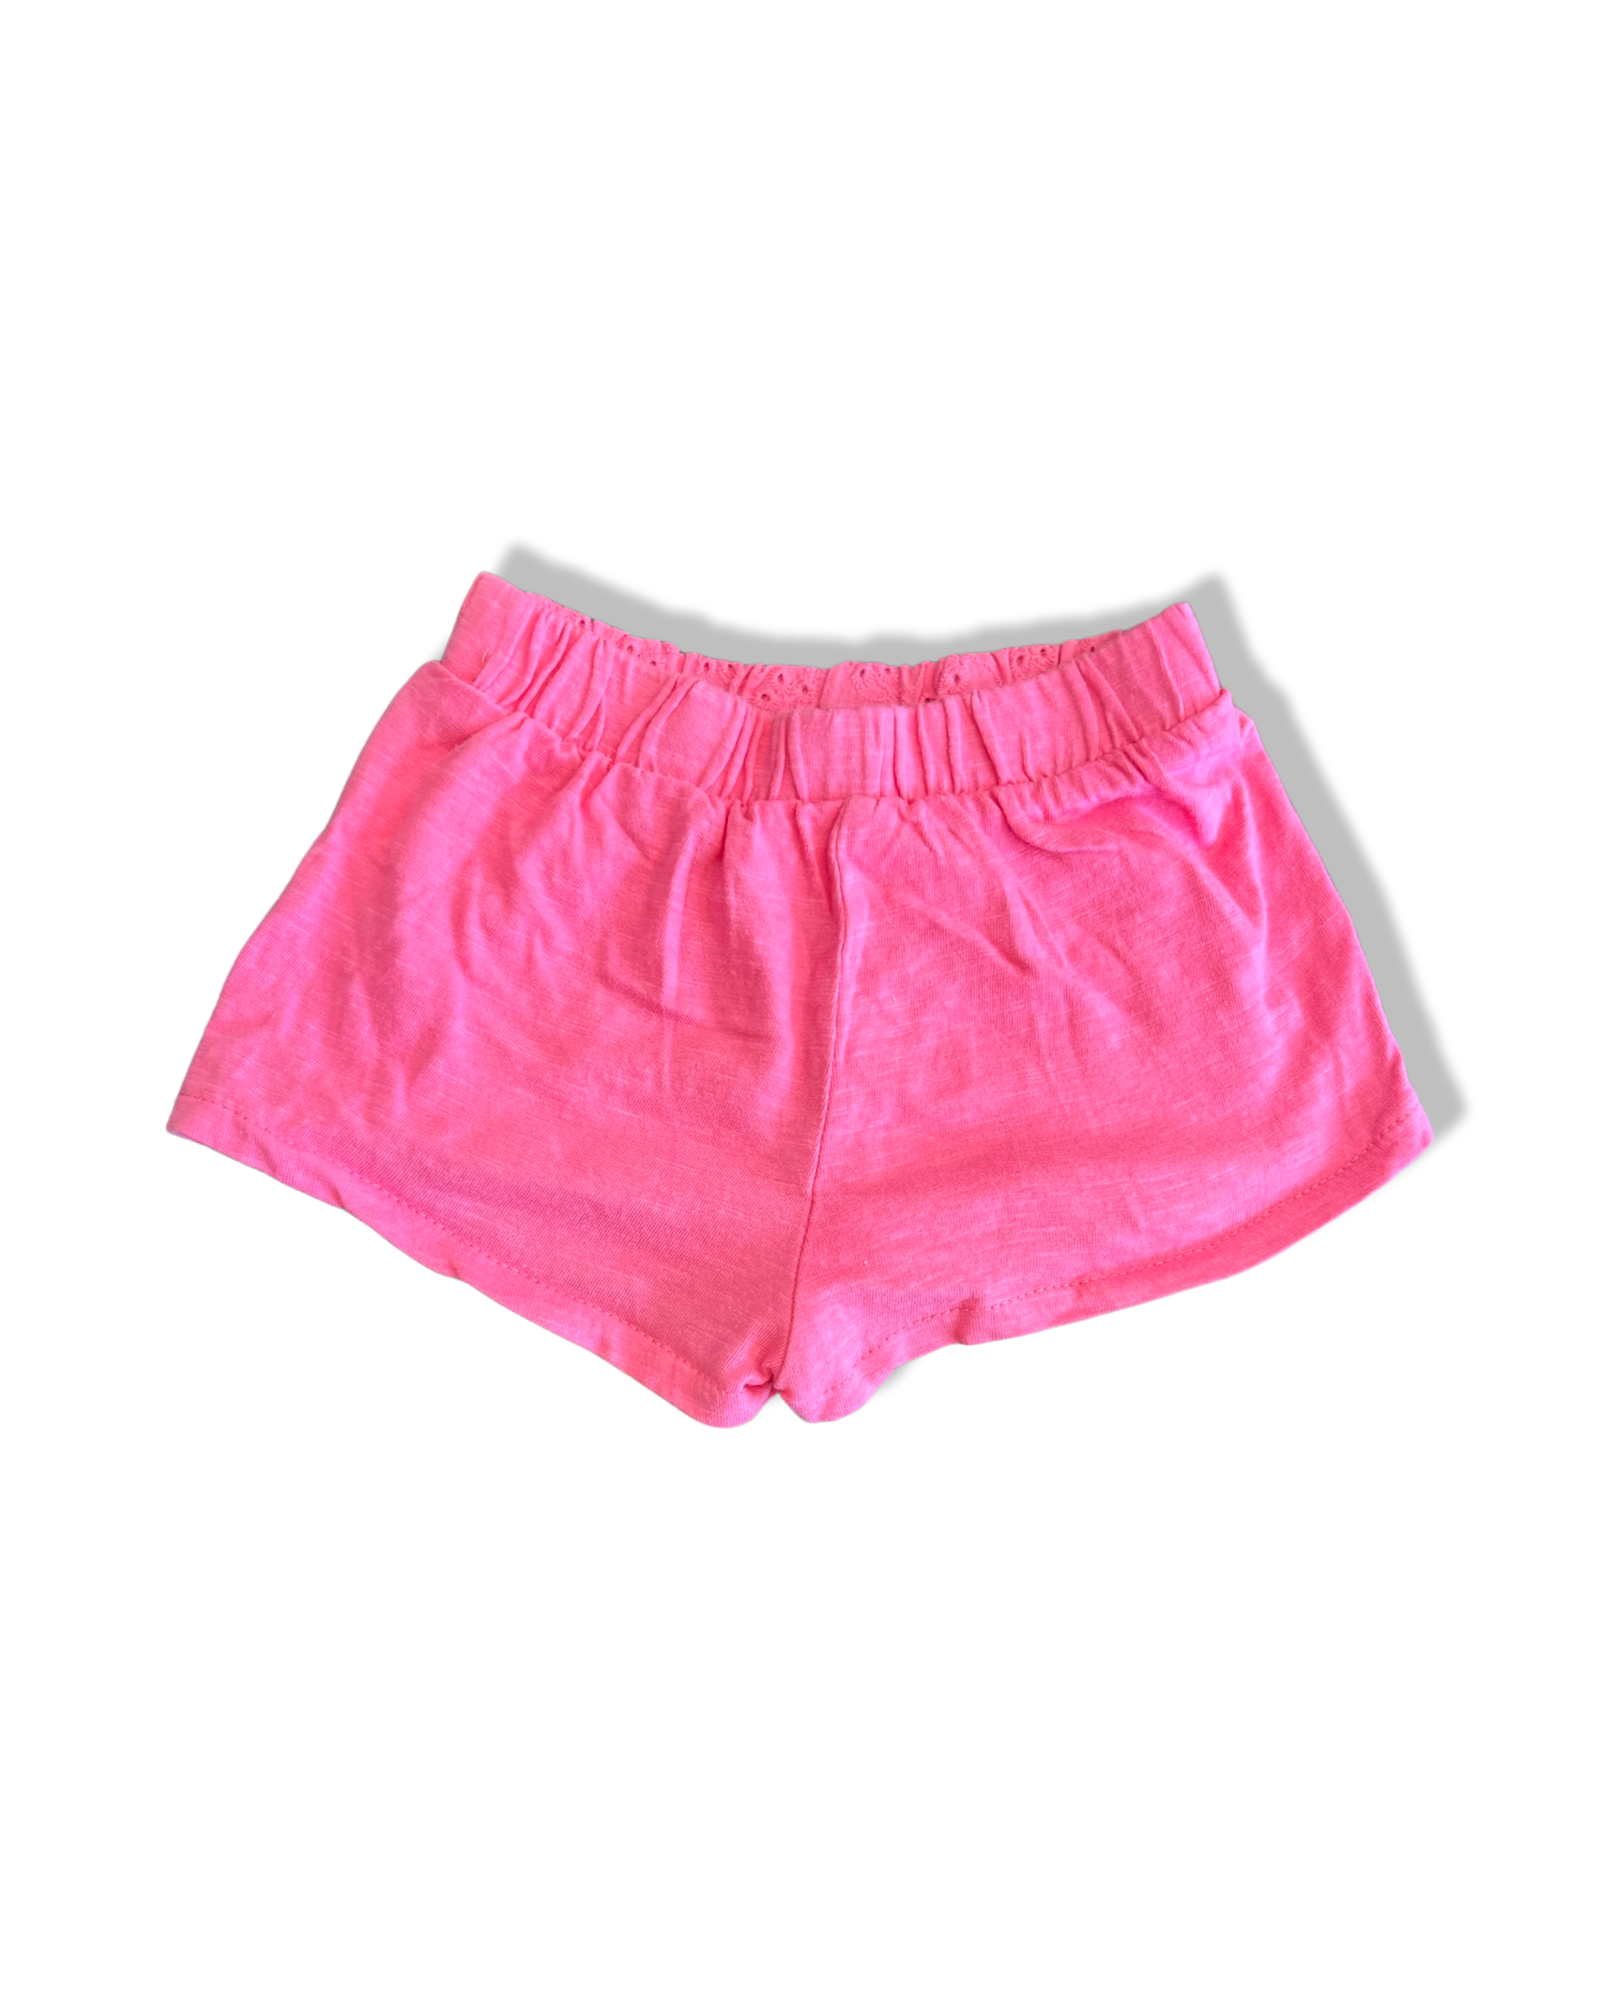 Zara Pink Shorts (12-18M)